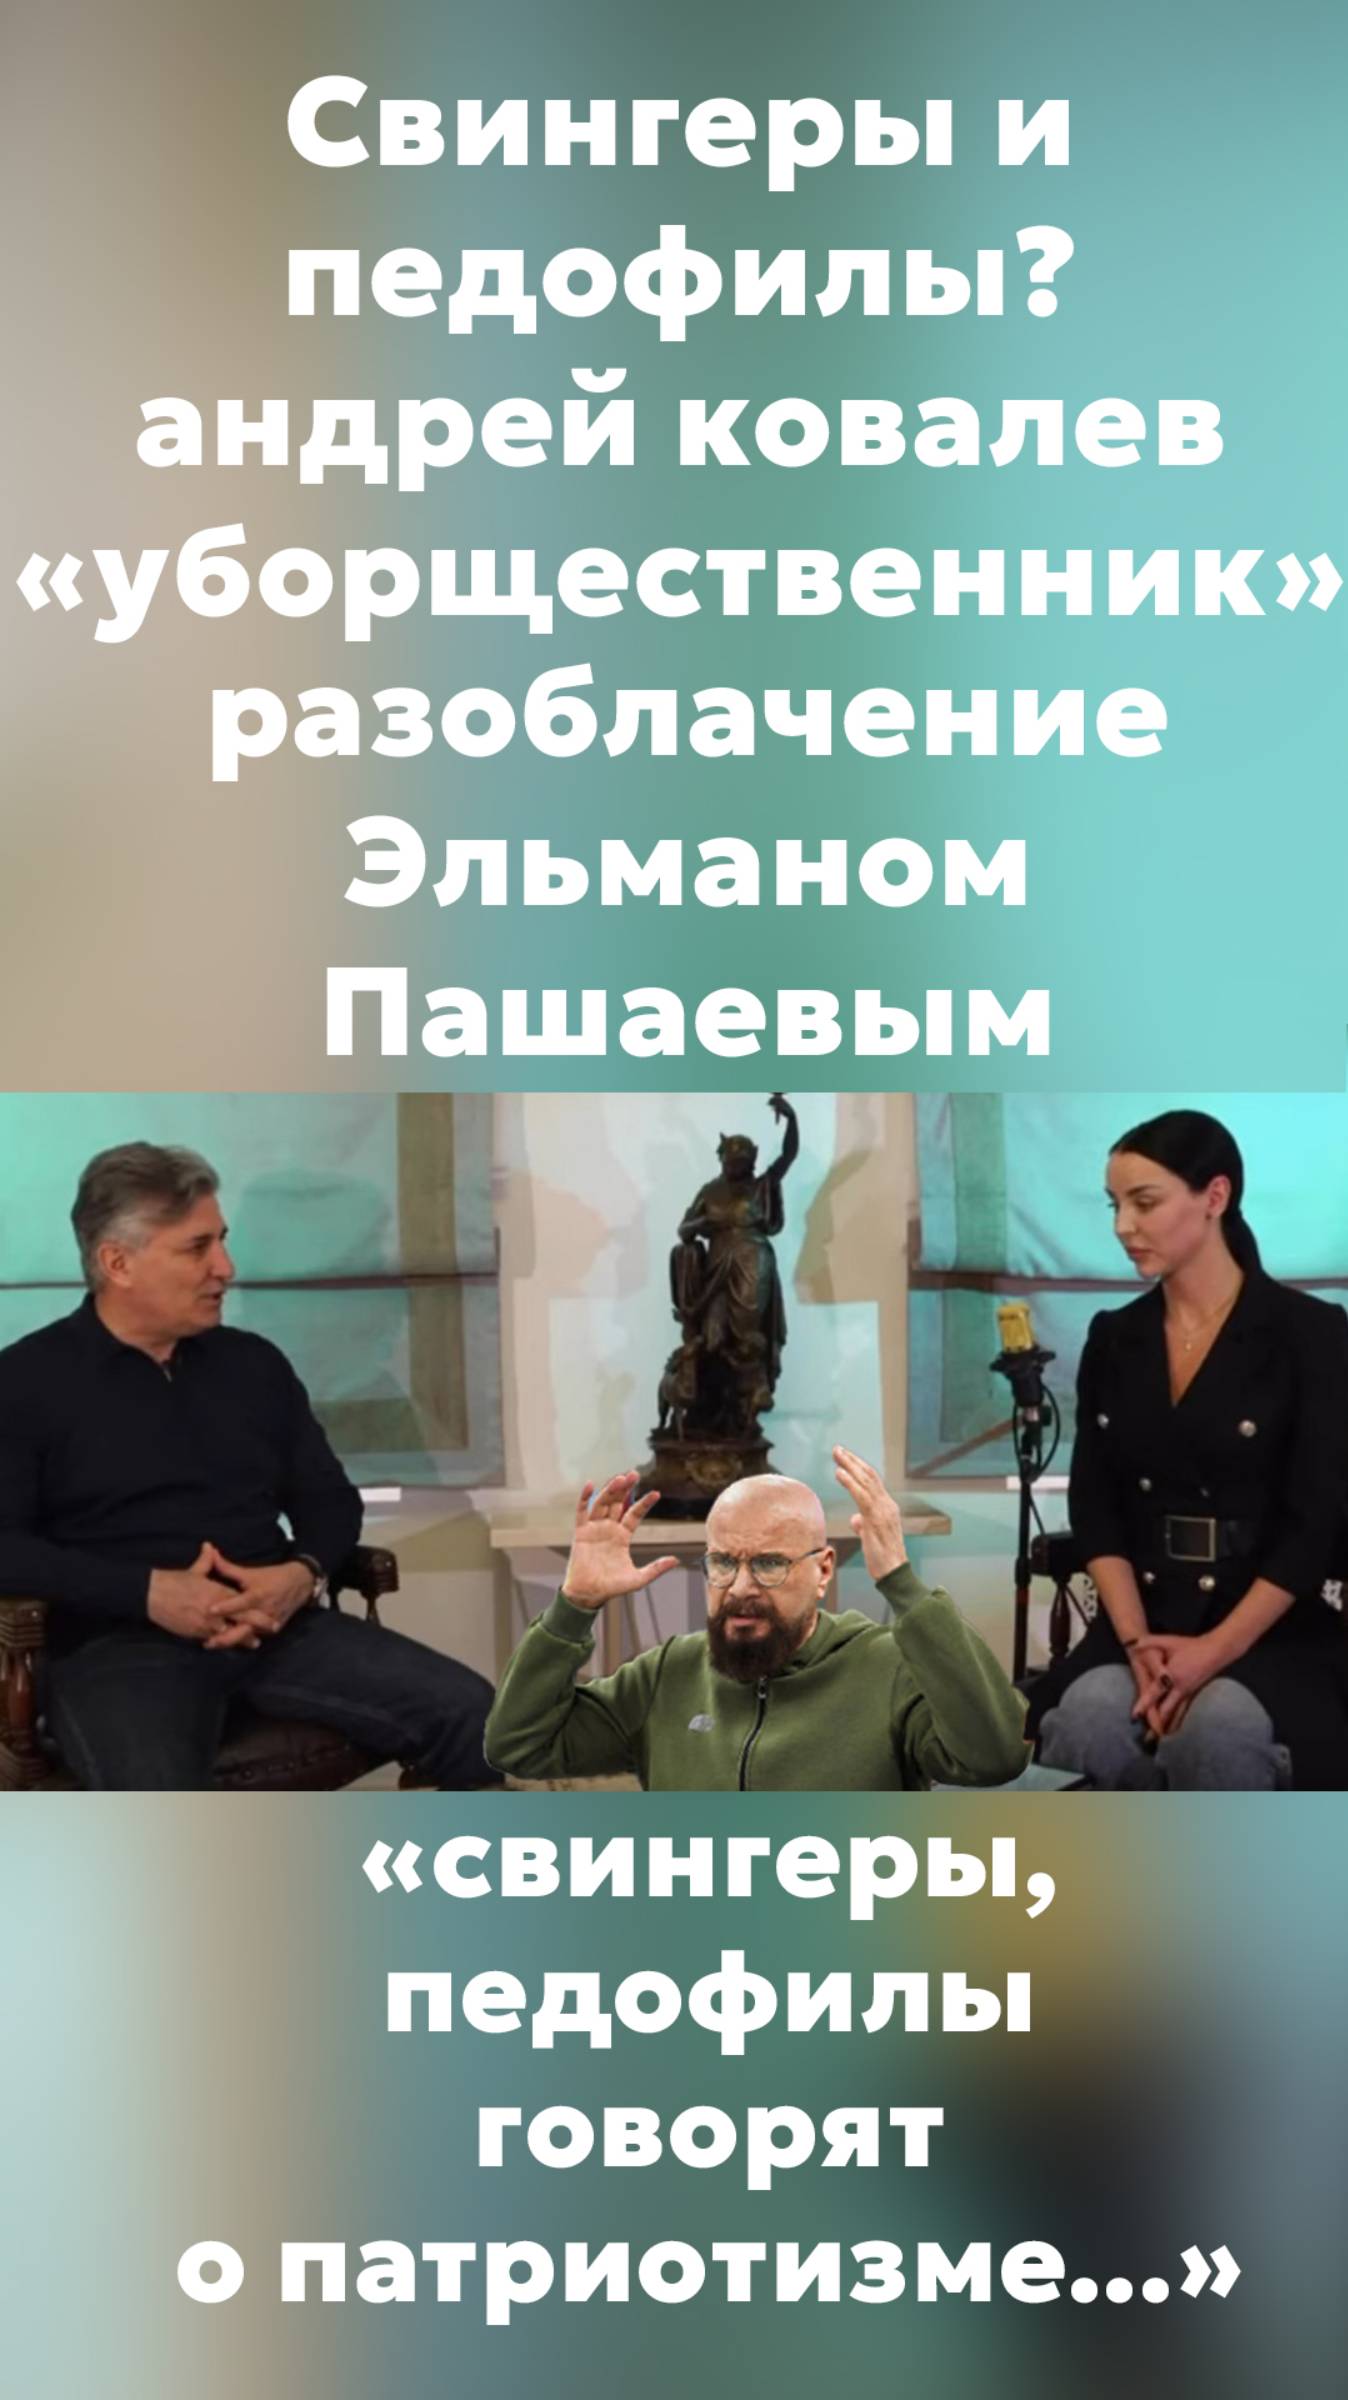 "свингеры, педофилы говорят о патриотизме..." #пашаев #интервью #shorts